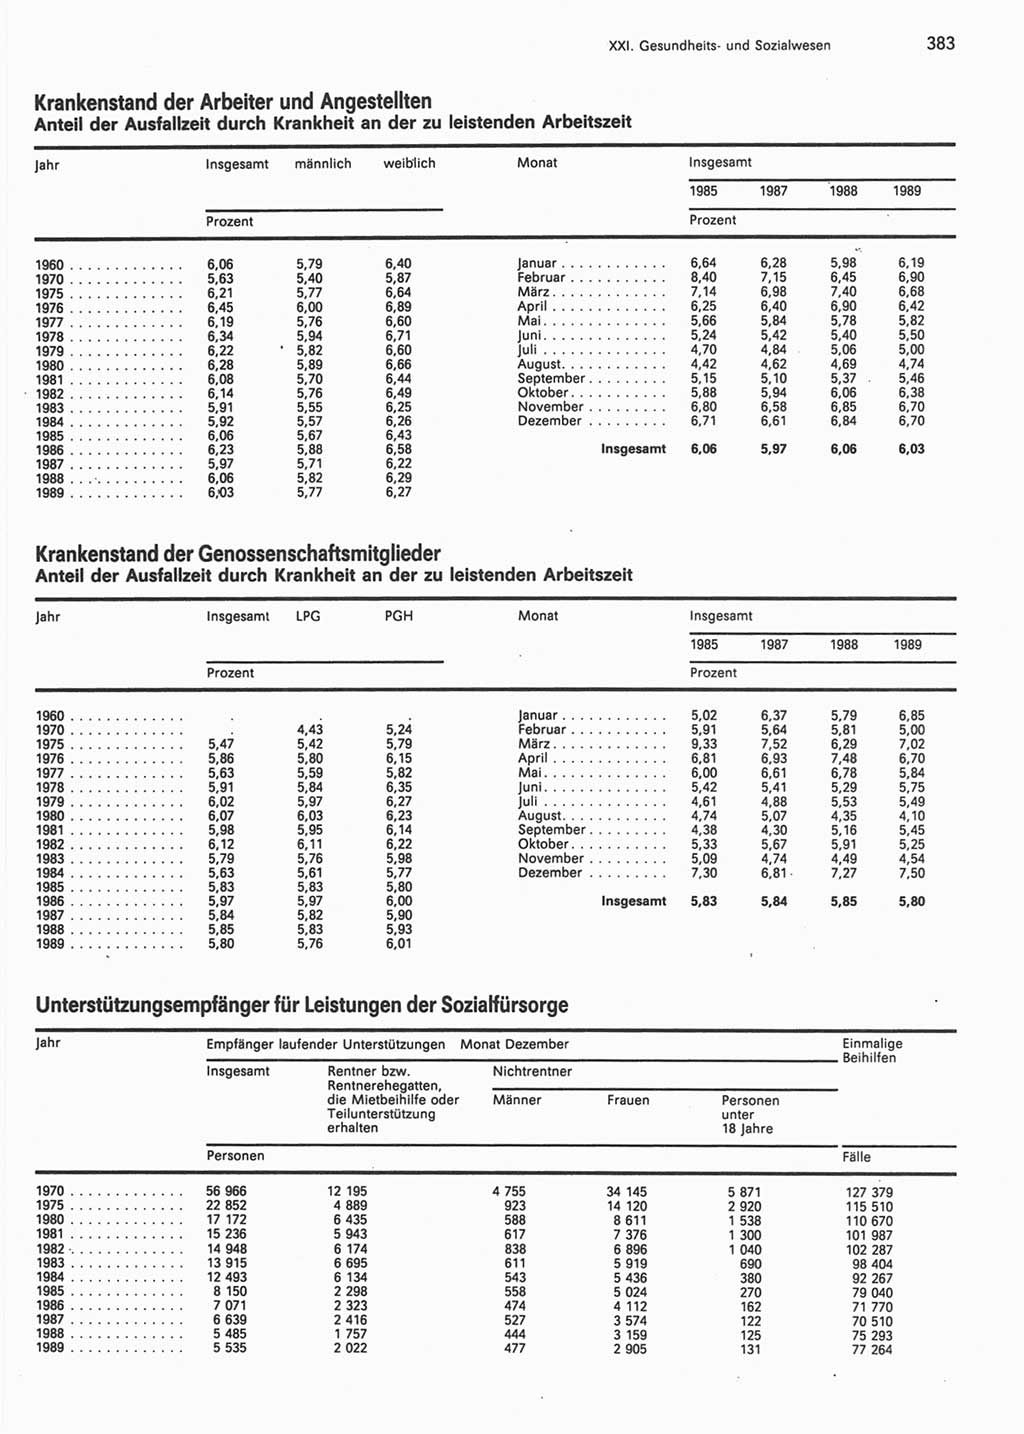 Statistisches Jahrbuch der Deutschen Demokratischen Republik (DDR) 1990, Seite 383 (Stat. Jb. DDR 1990, S. 383)